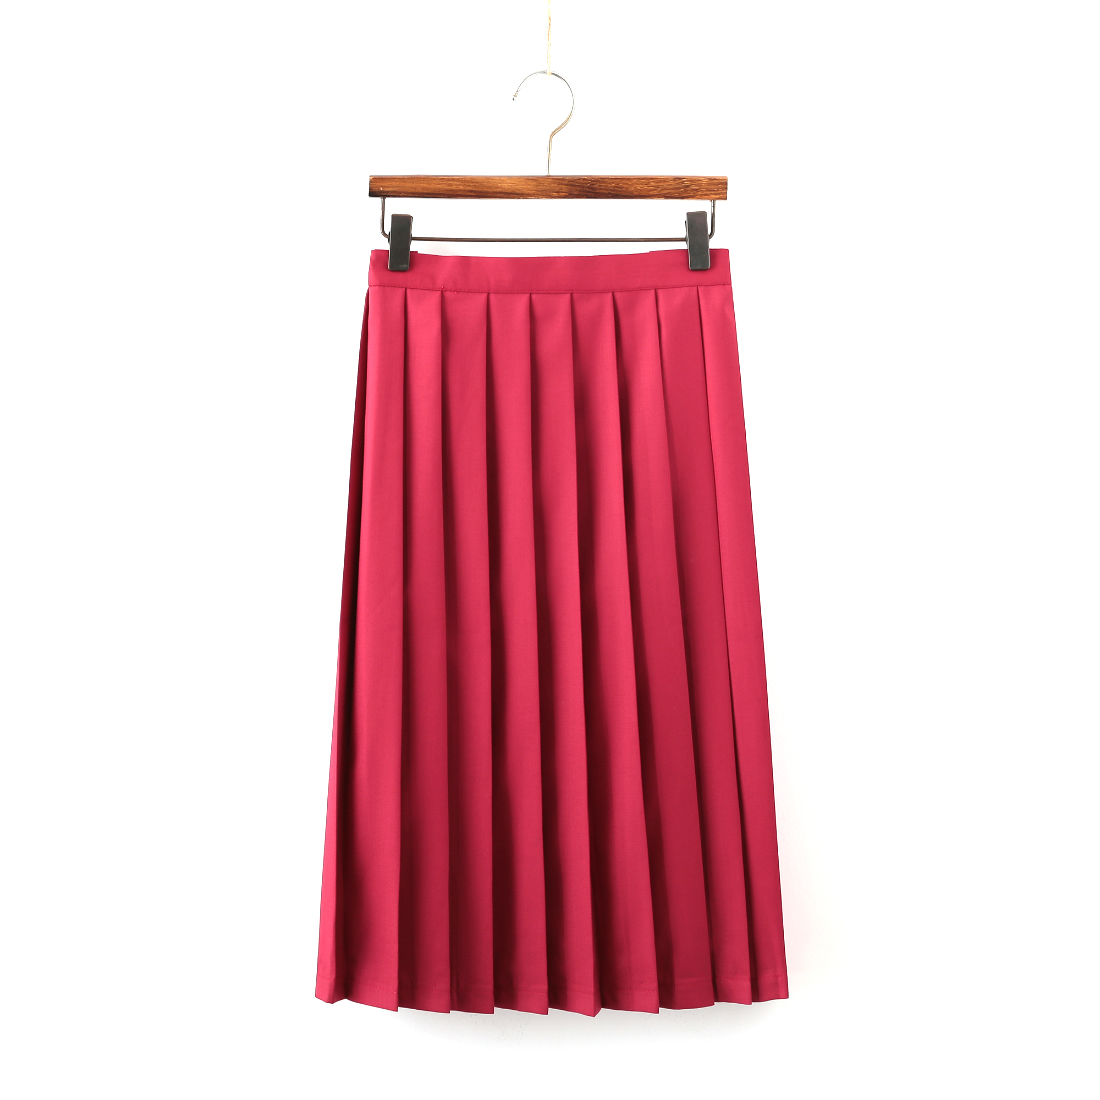 Red mid-length skirt (65cm)